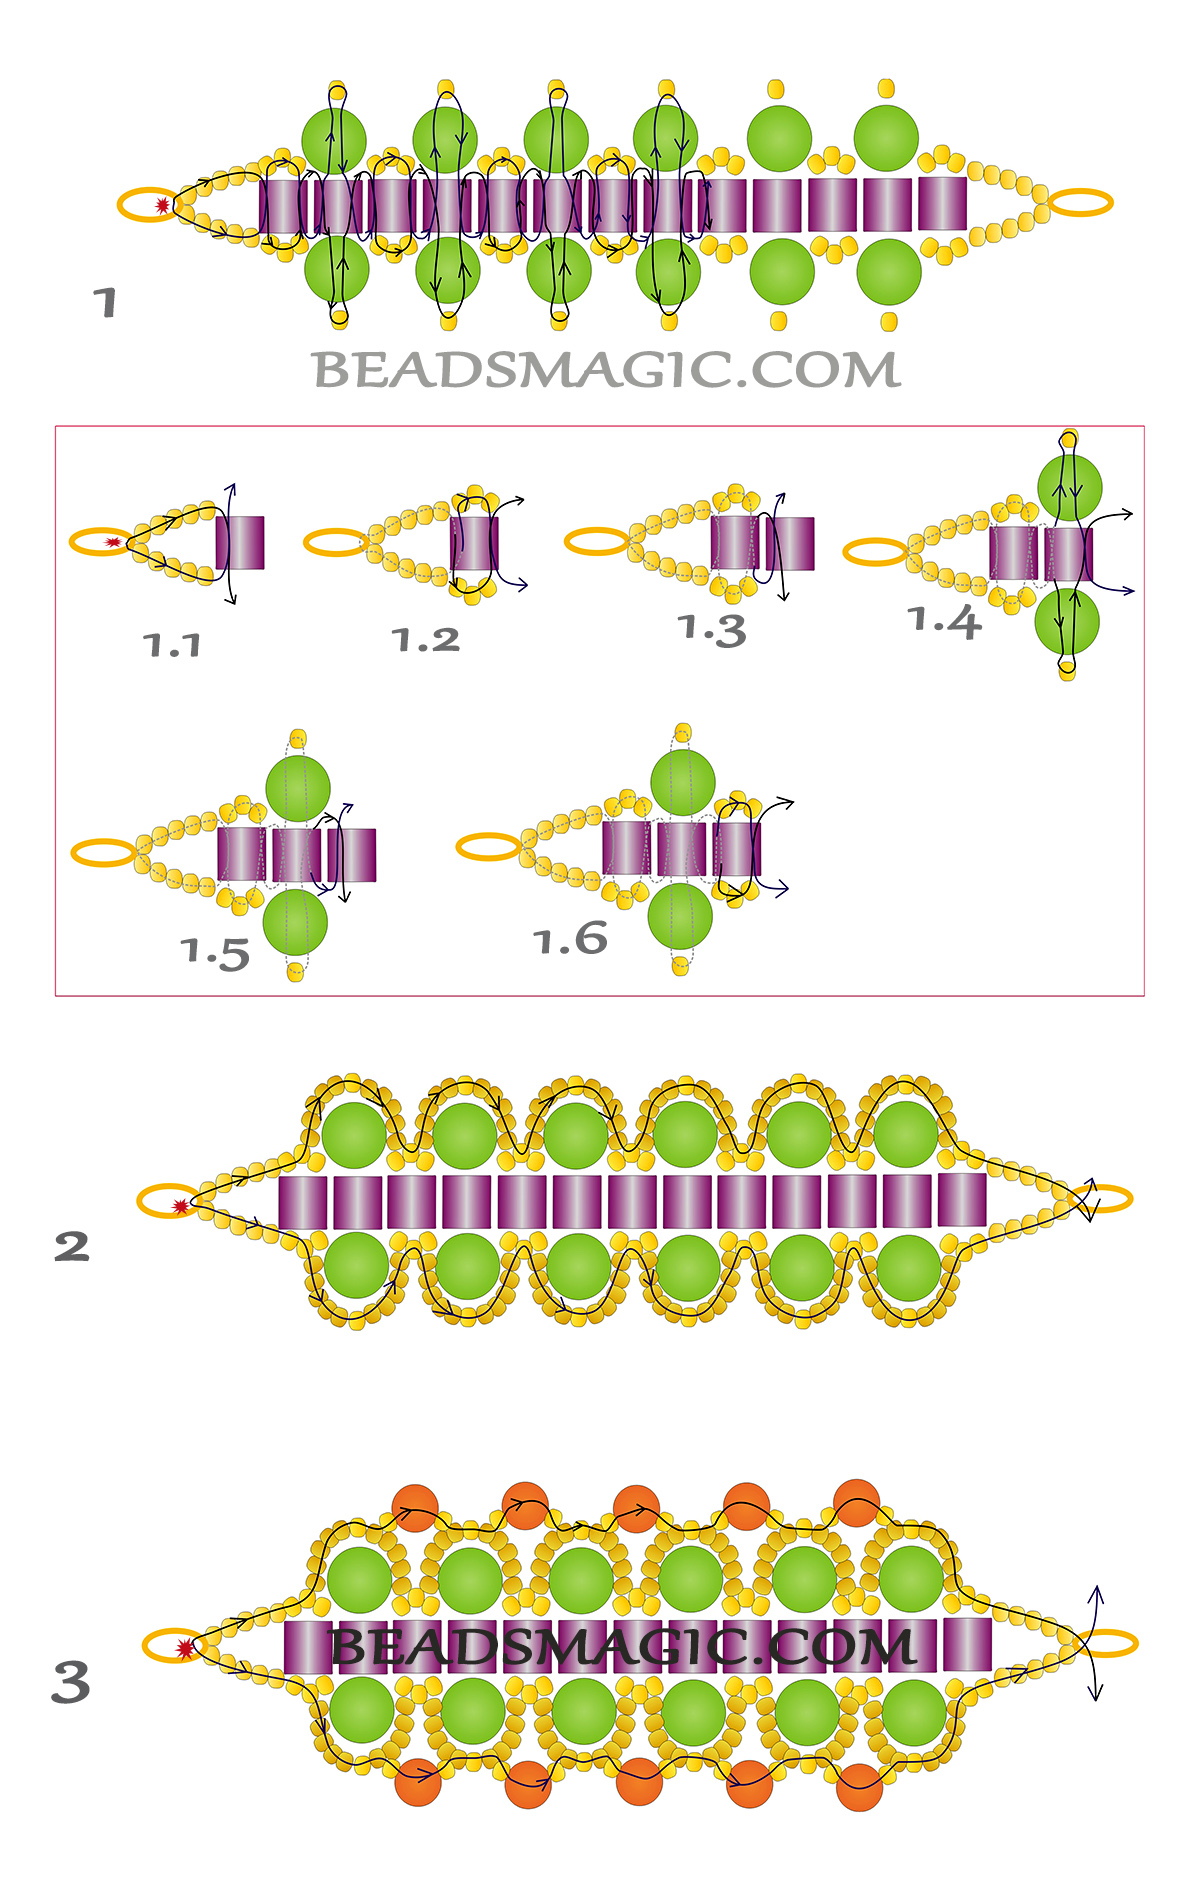 How to Make Seed Bead Bracelets: FREE Tutorial on Bluprint